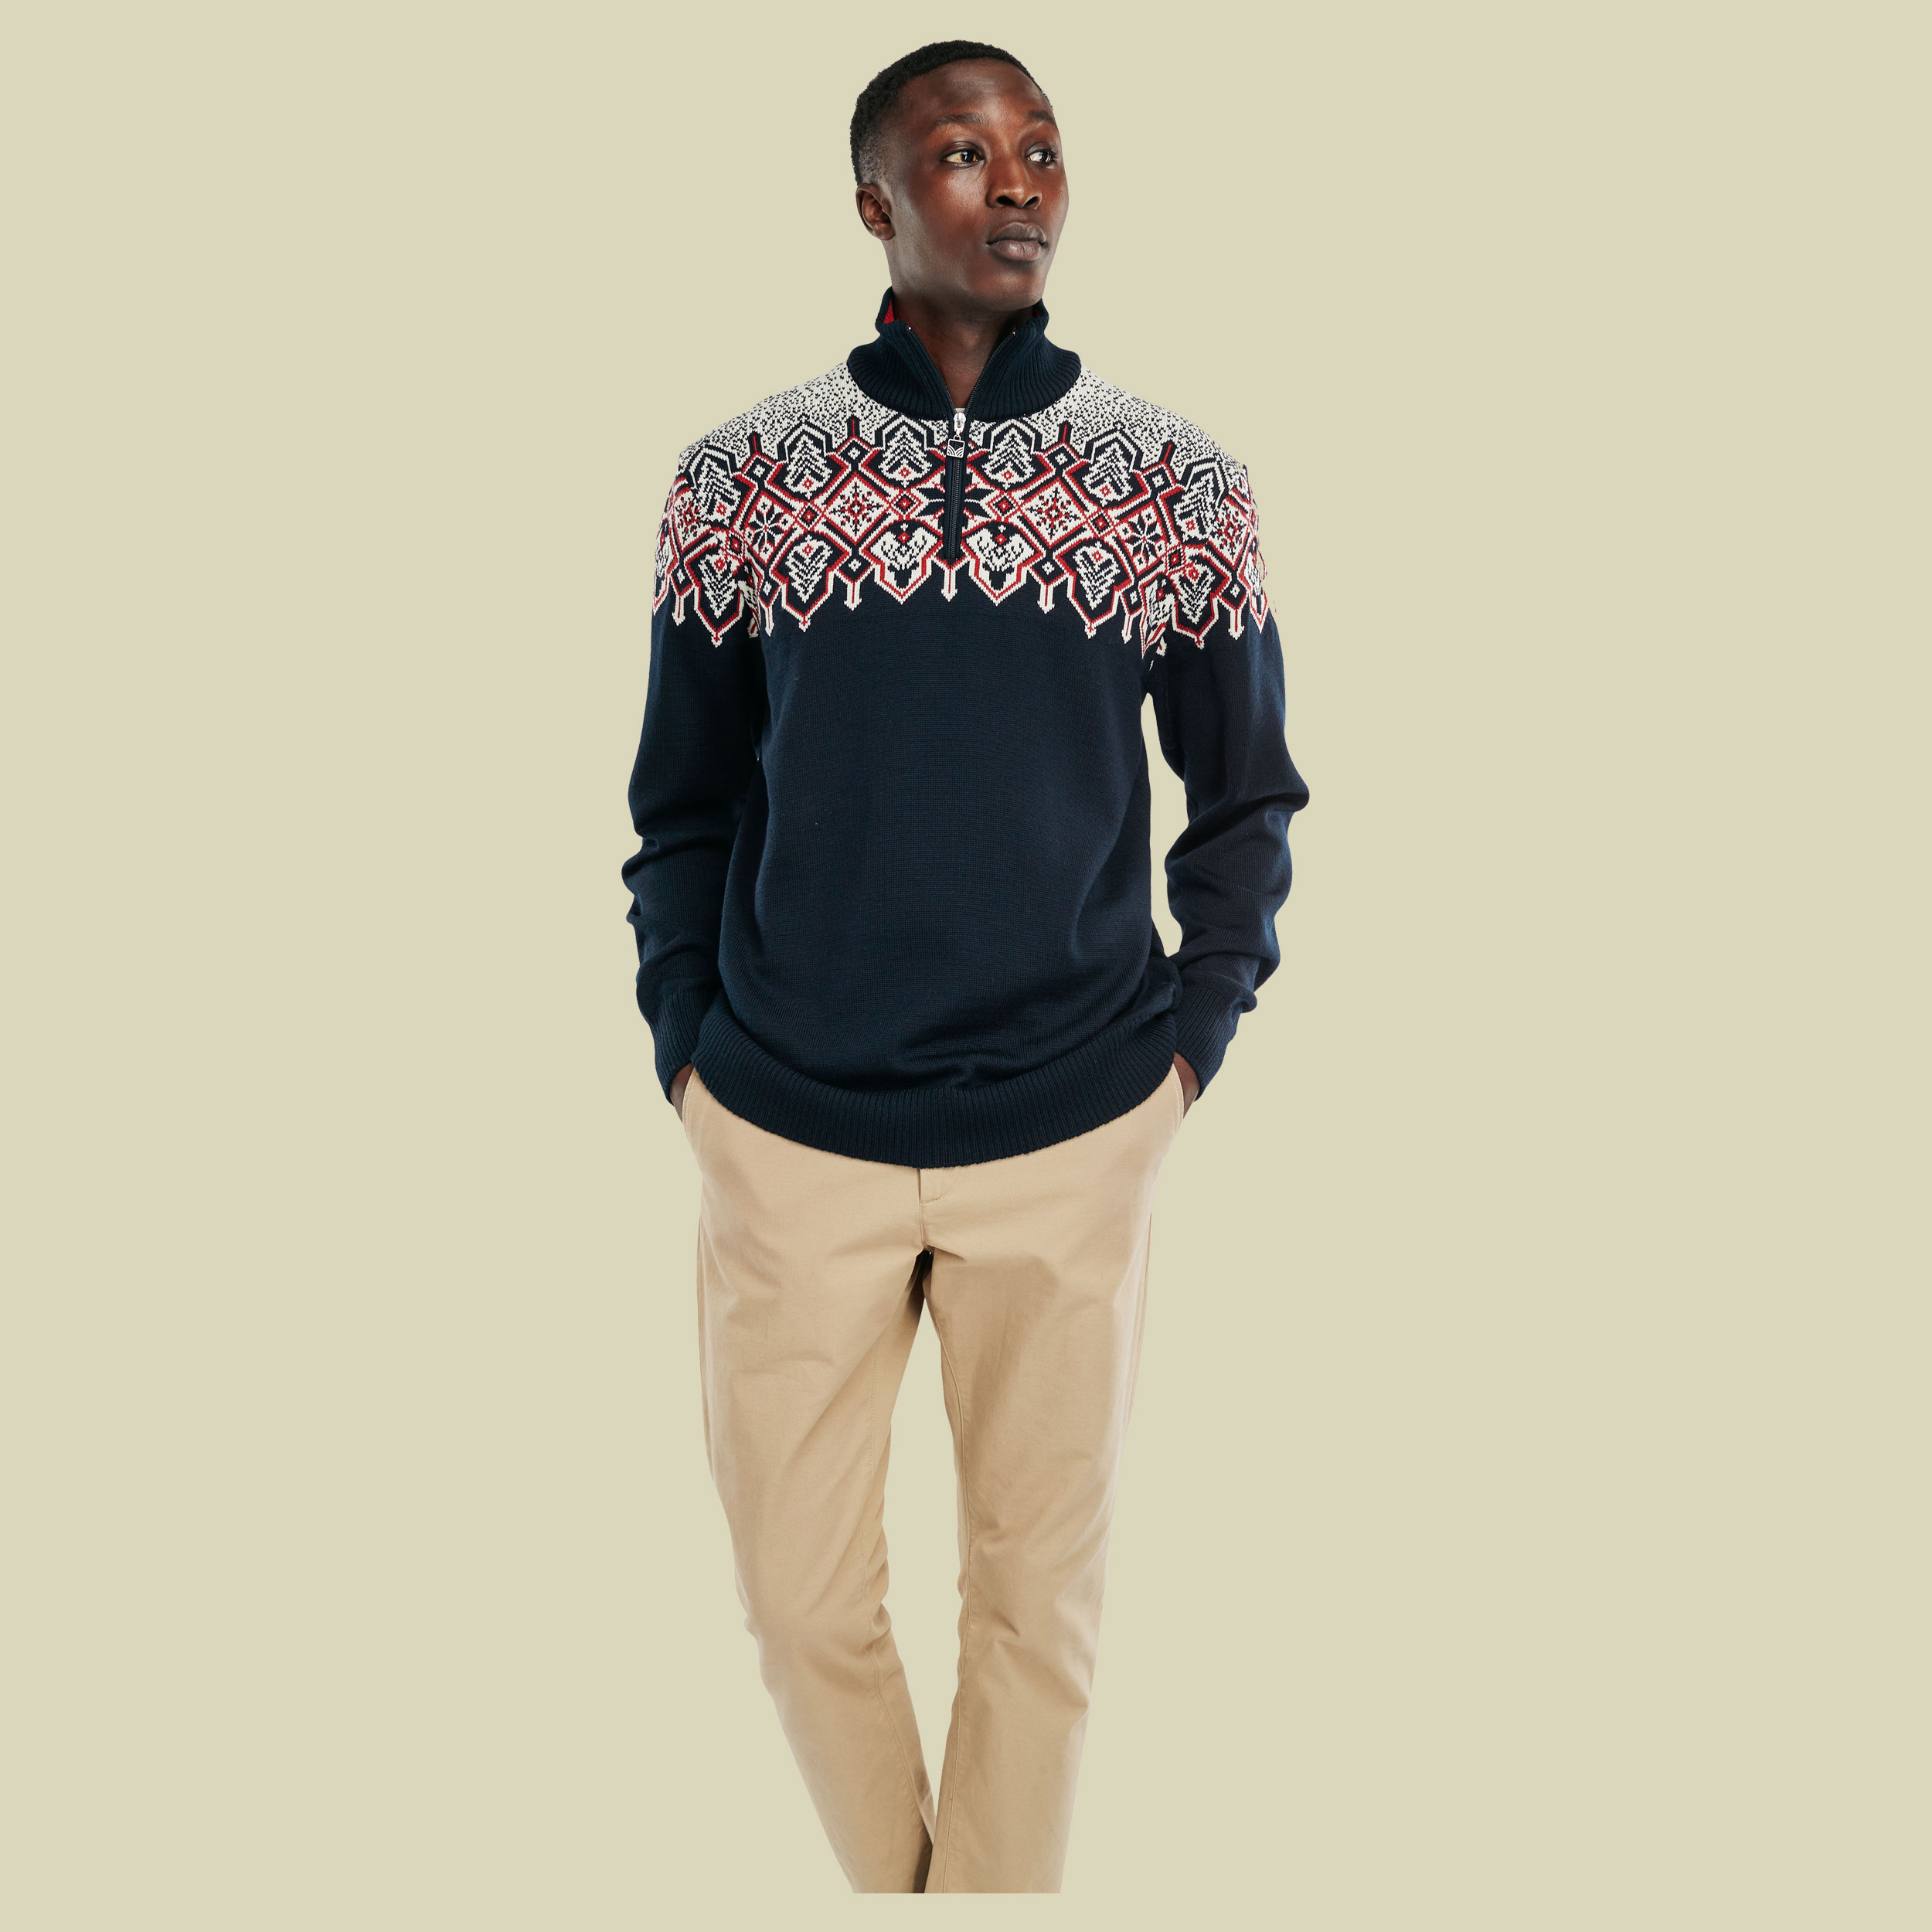 Winterland Sweater Men Größe XXL Farbe navy-off white-raspberry